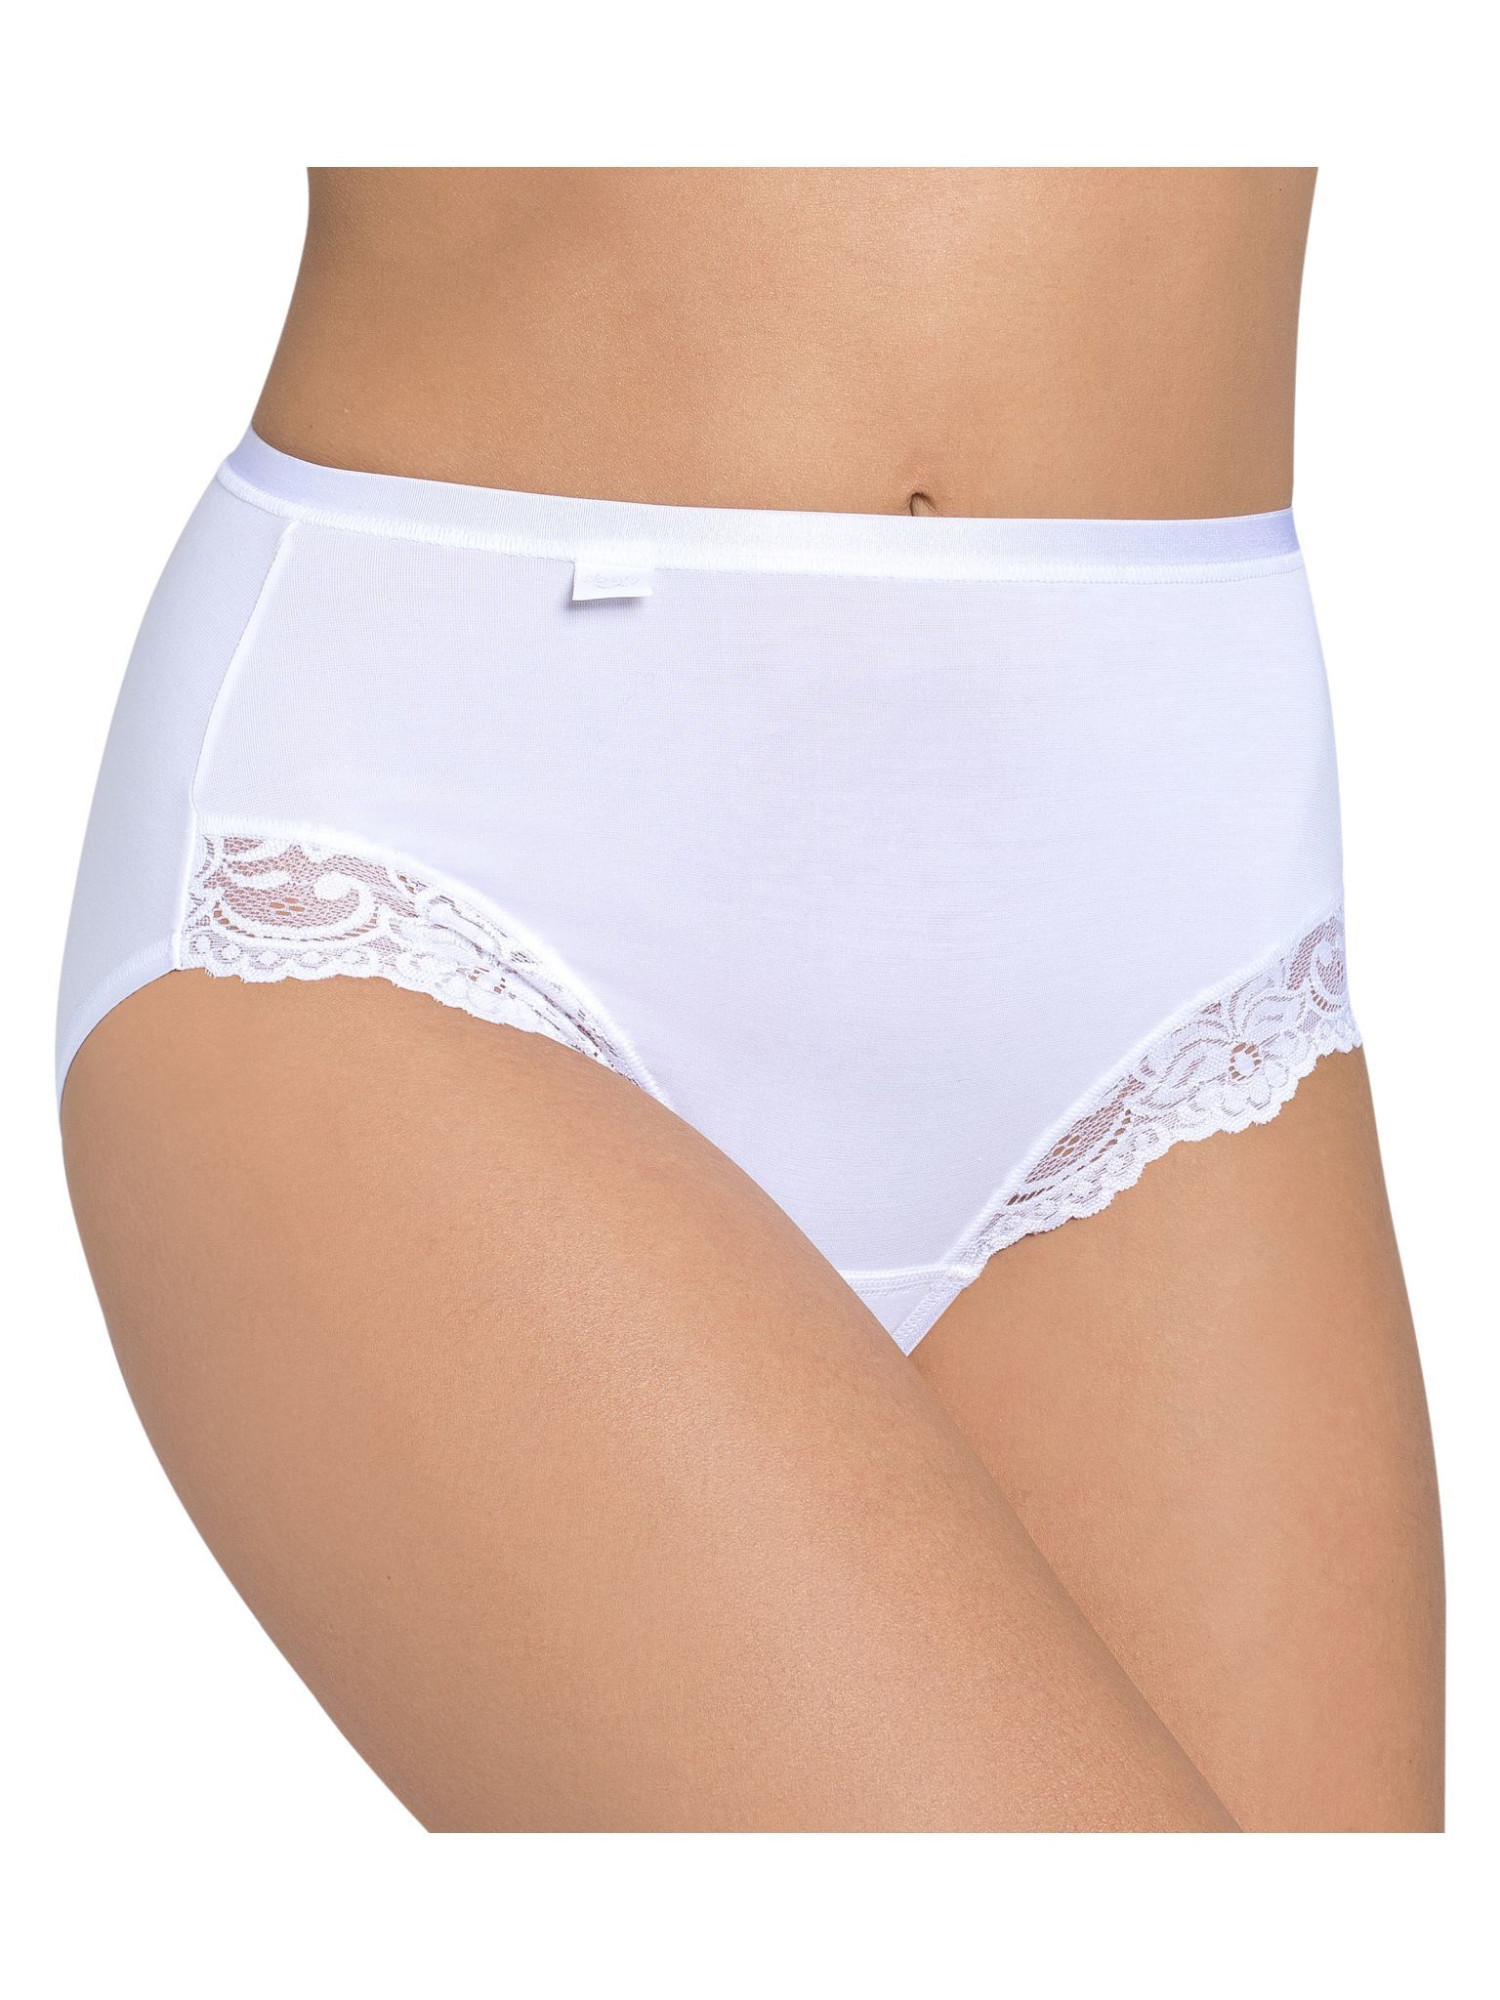 Dámské kalhotky Romance Maxi bílé - Sloggi WHITE 46